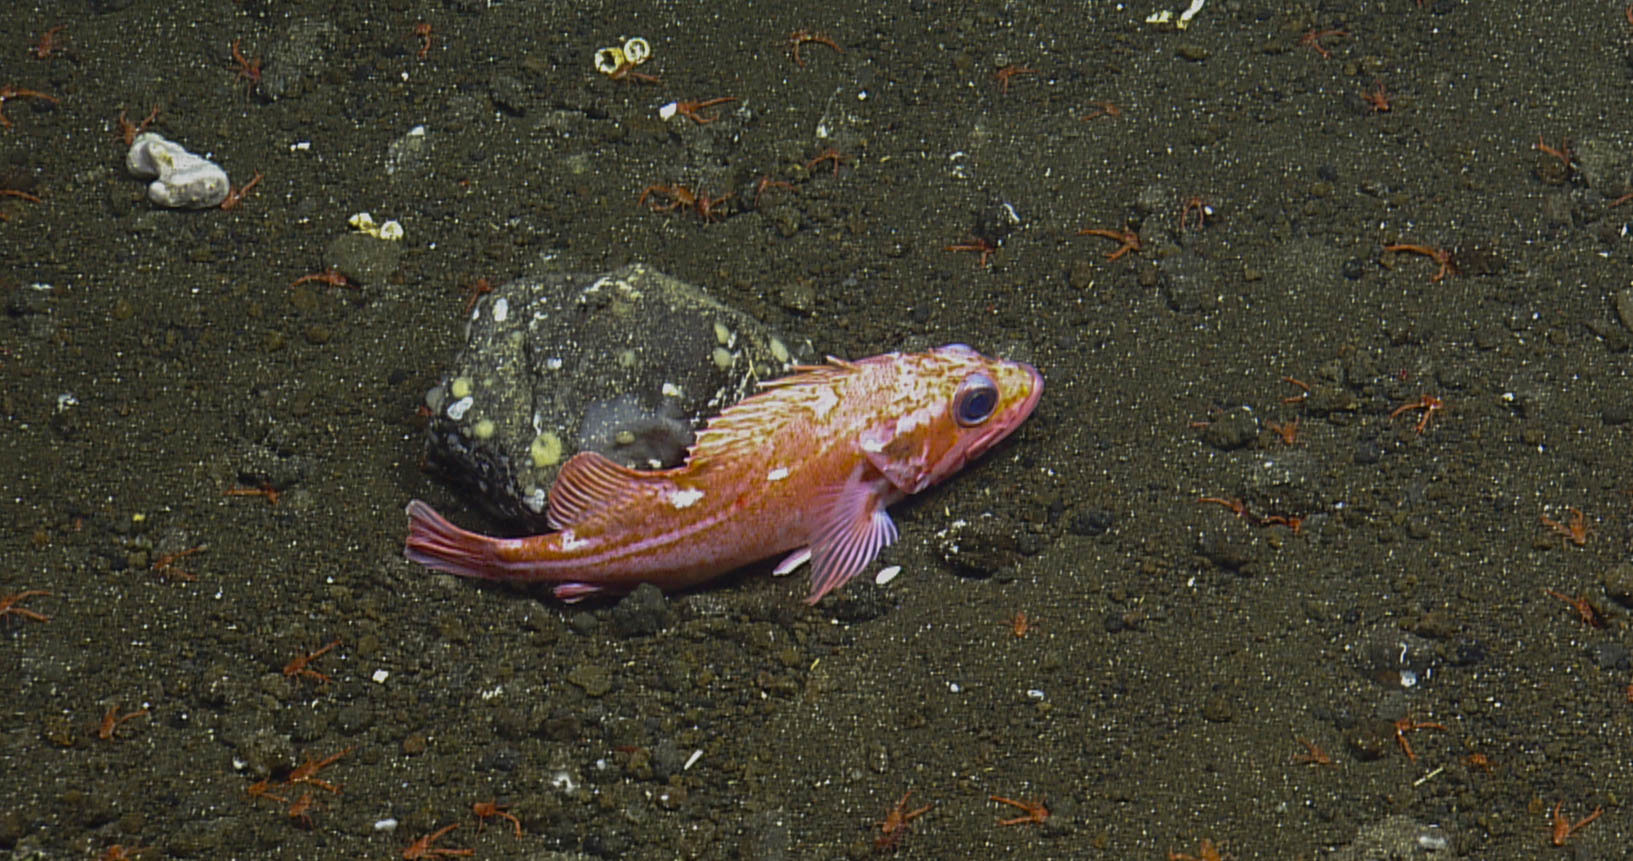 image of Sebastes helvomaculatus (Rosethorn rockfish)